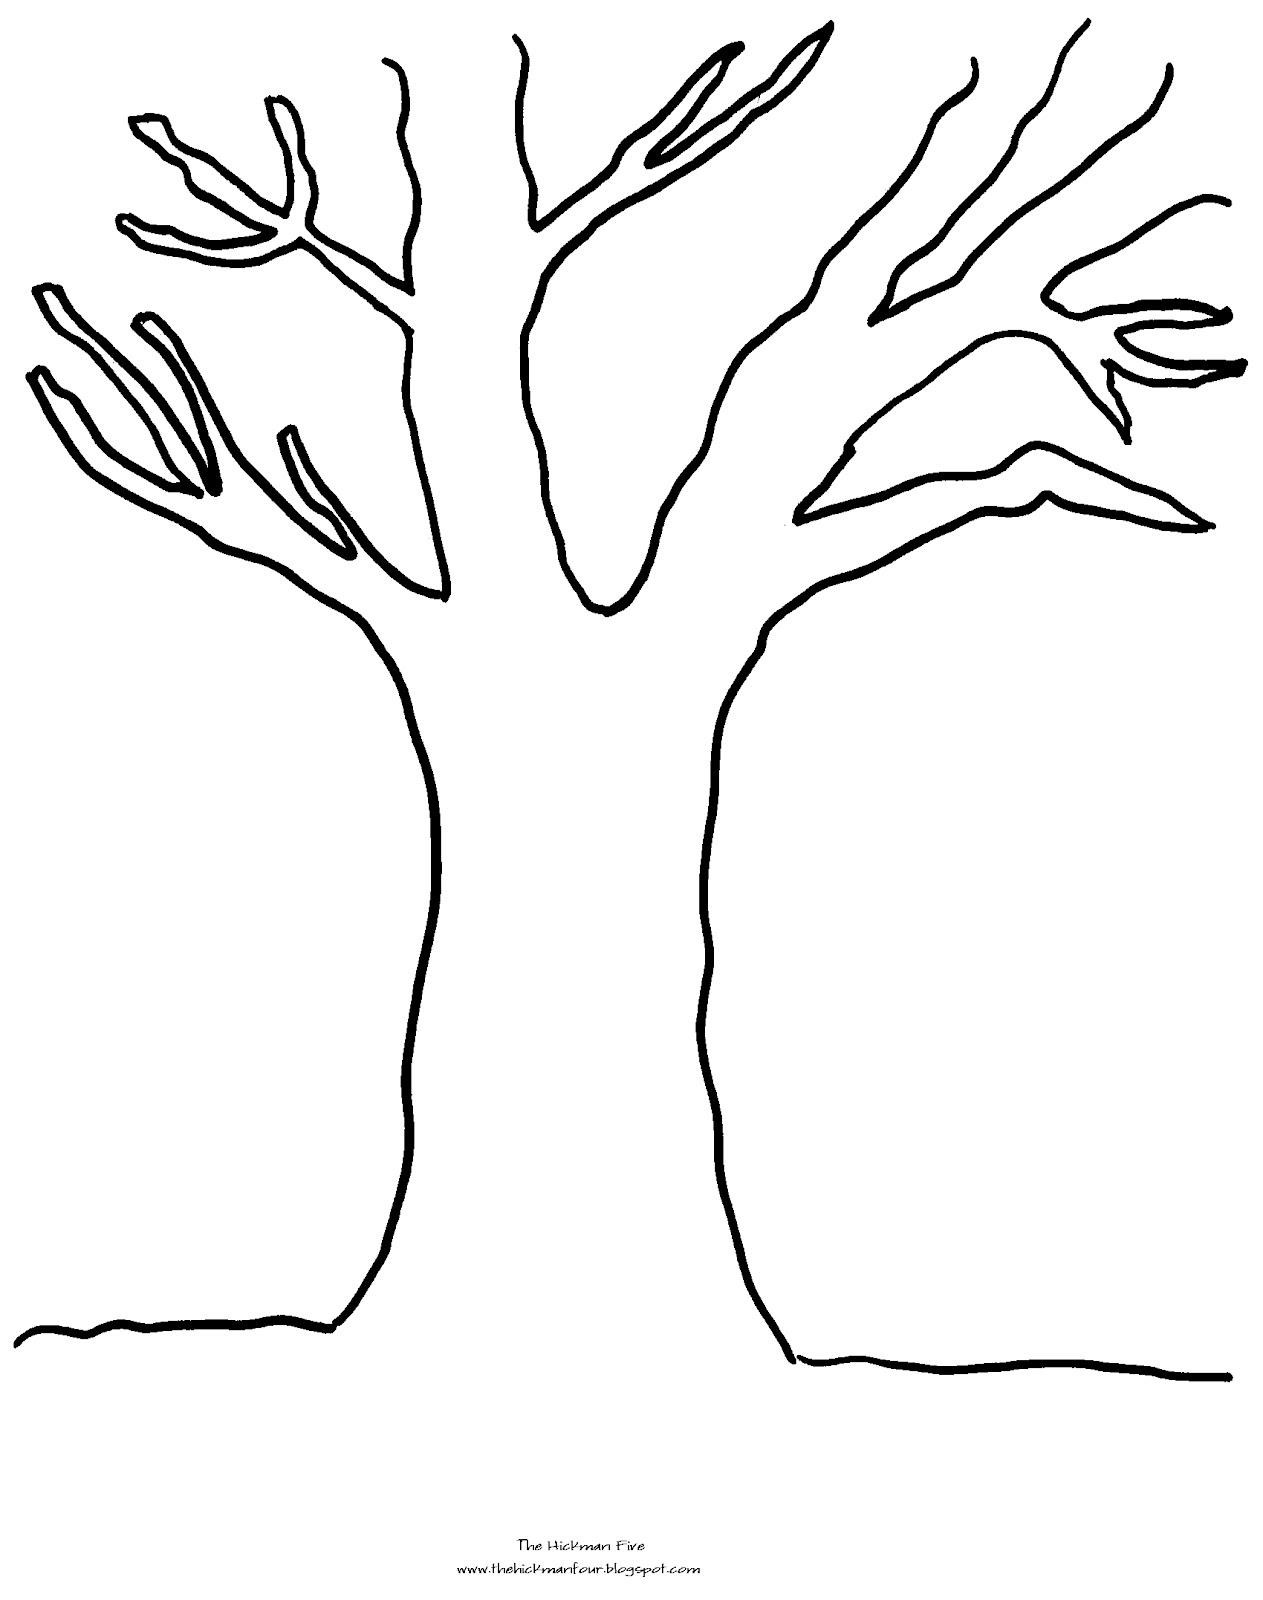 Аппликация дерево шаблон распечатать. Трафарет "дерево". Дерево трафарет для рисования. Дерево для вырезания. Ствол дерева для аппликации.